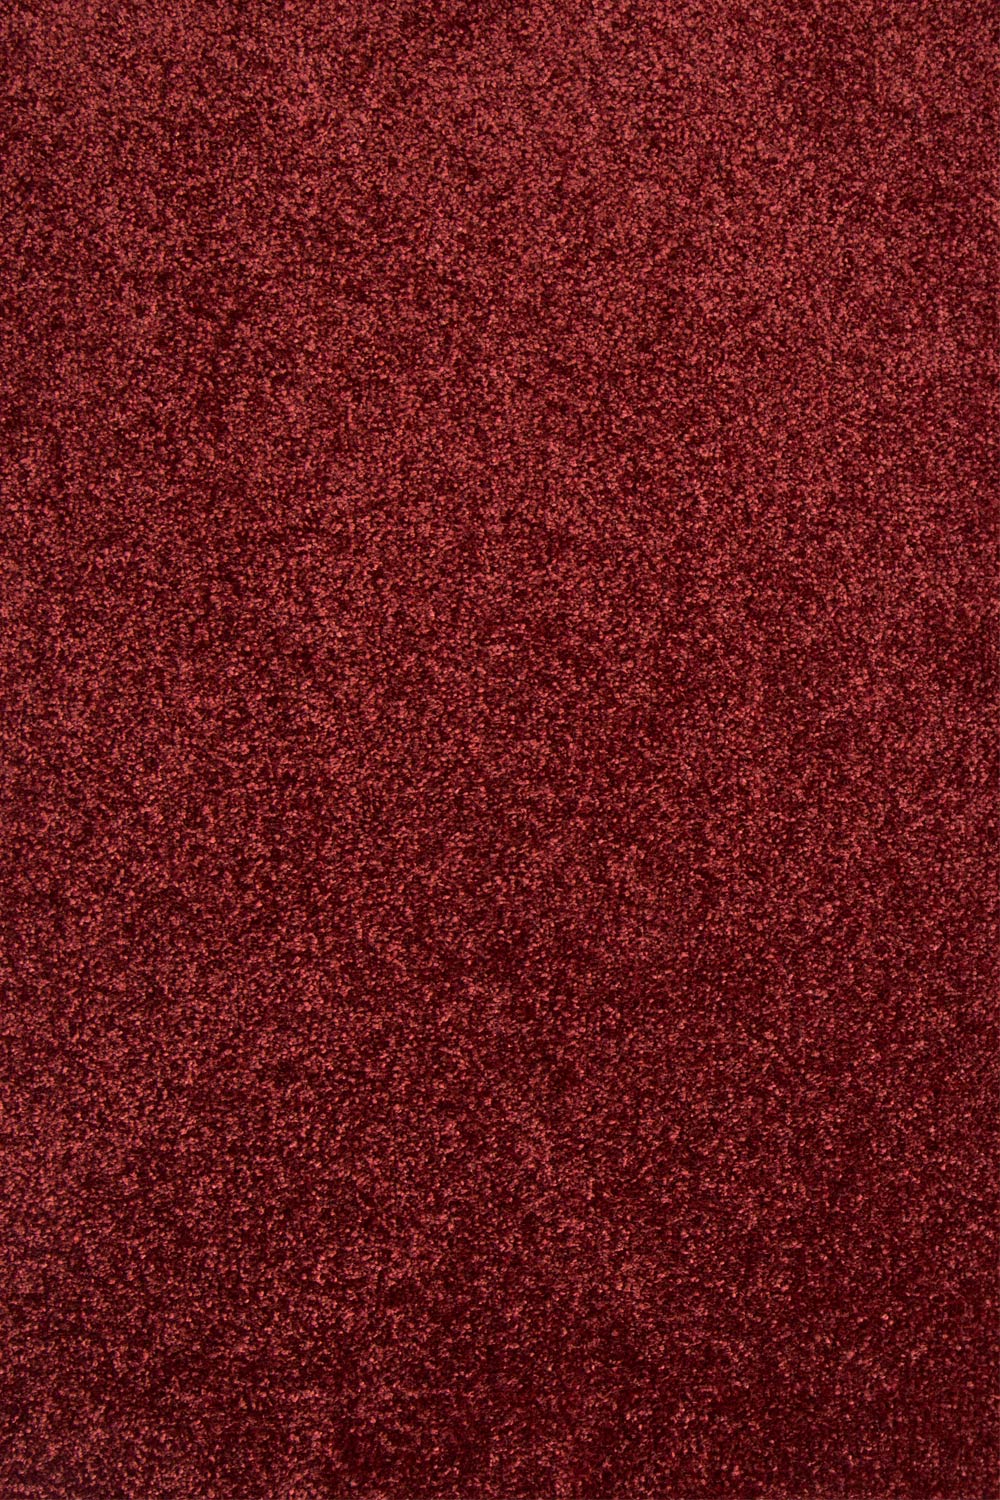 Metrážny koberec Swindon 49 bledohnedá